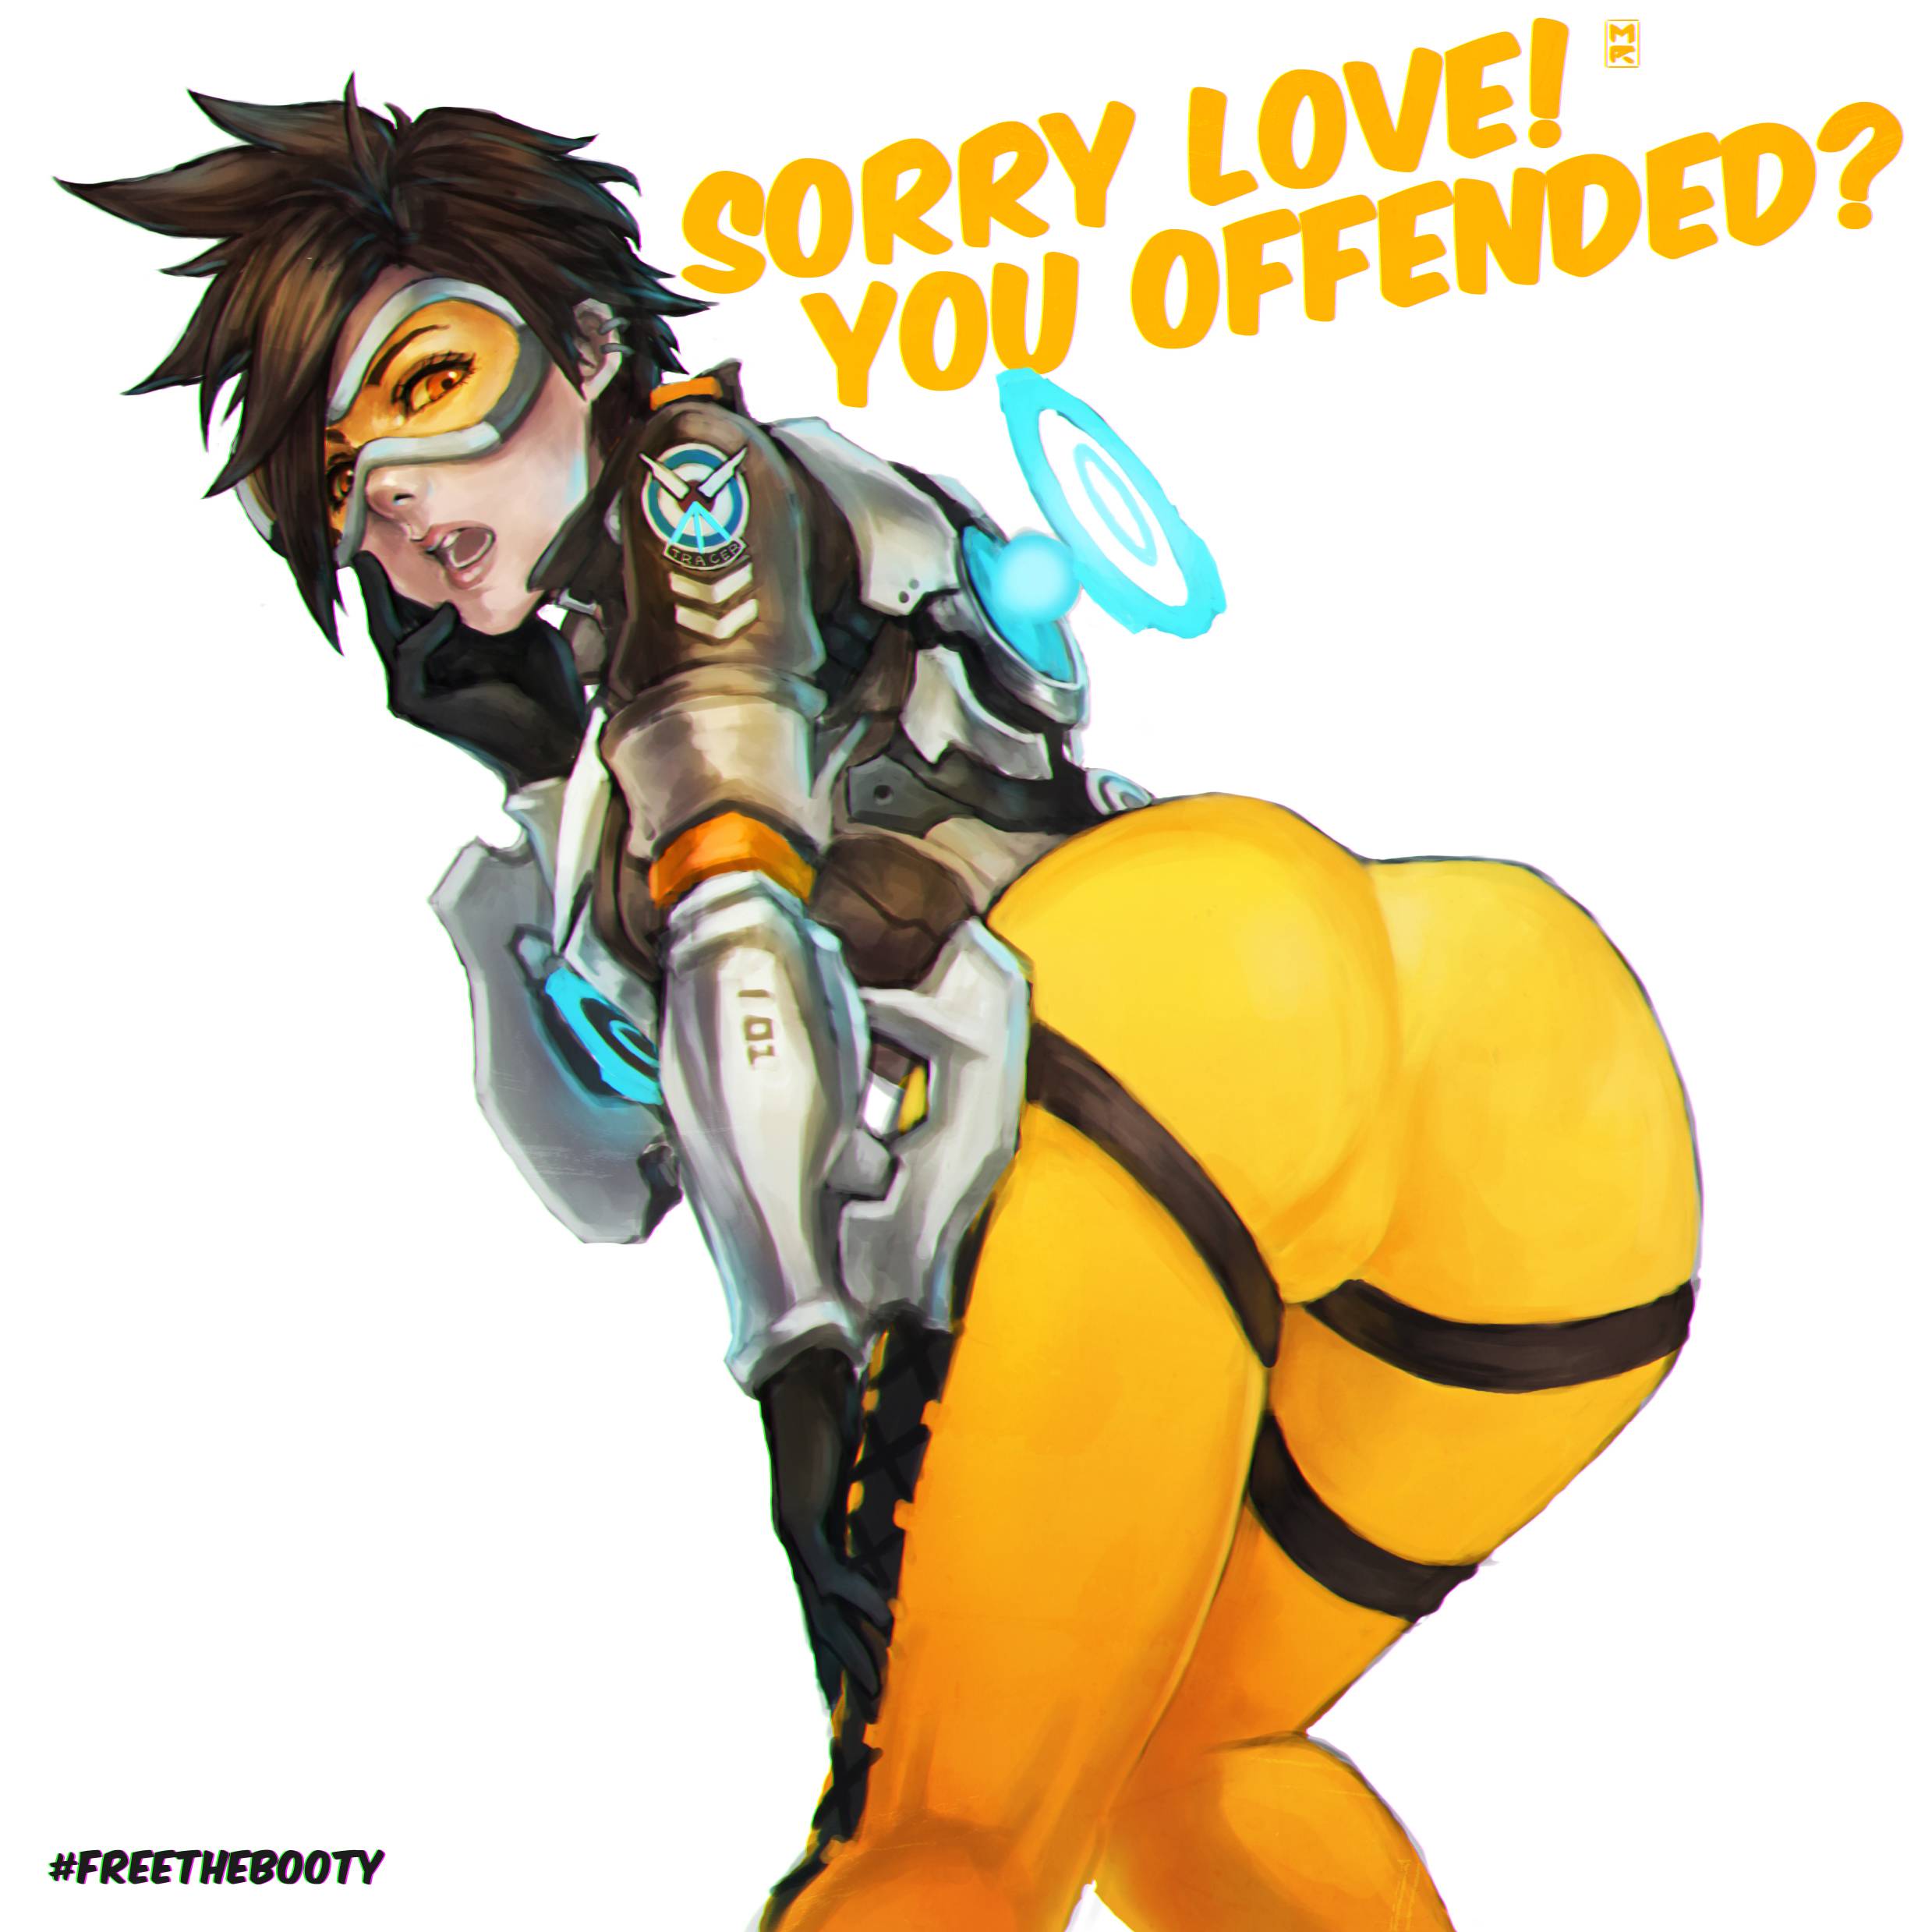 sorry love you offended - Sorry Love! You Offended? Zd